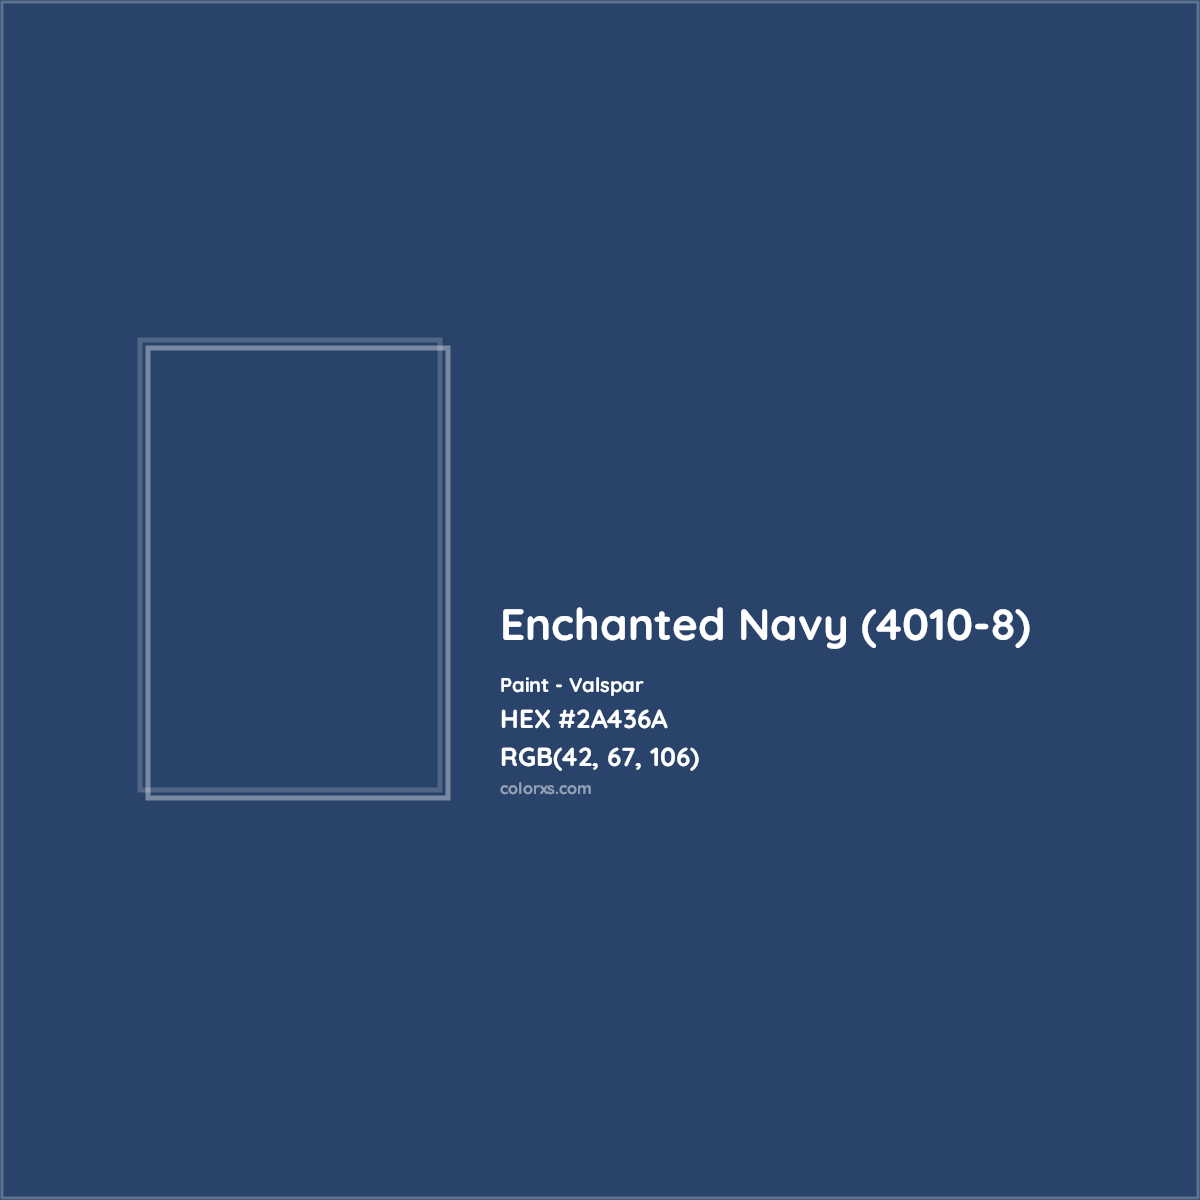 HEX #2A436A Enchanted Navy (4010-8) Paint Valspar - Color Code